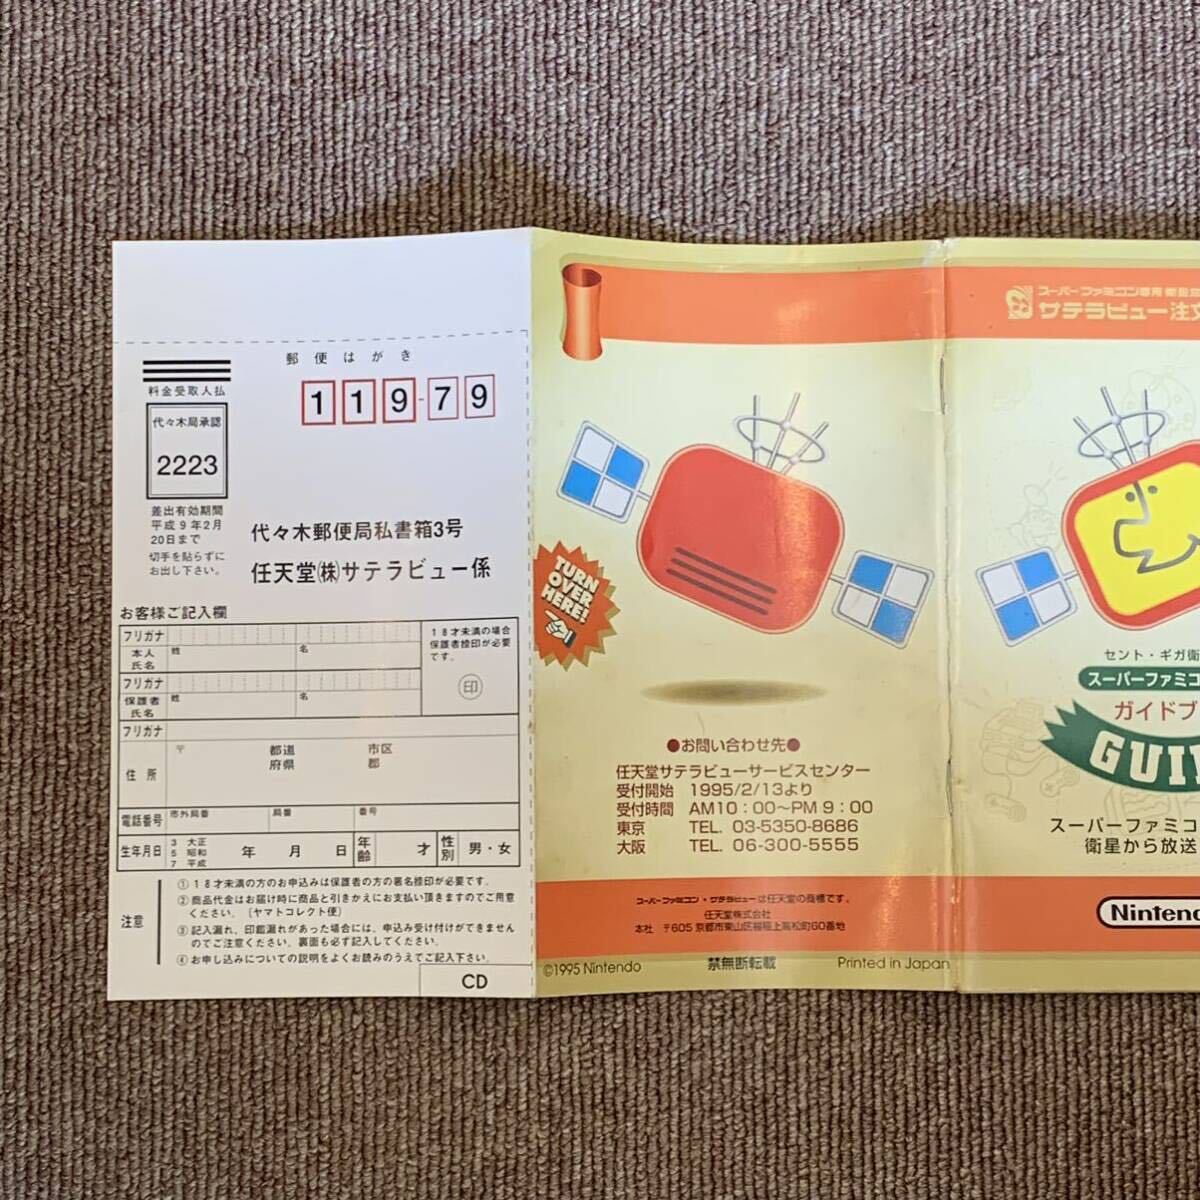 [SFC Super Famicom ] cent * Giga satellite broadcasting Super Famicom Hour guidebook sa tera view order document // nintendo Nintendo